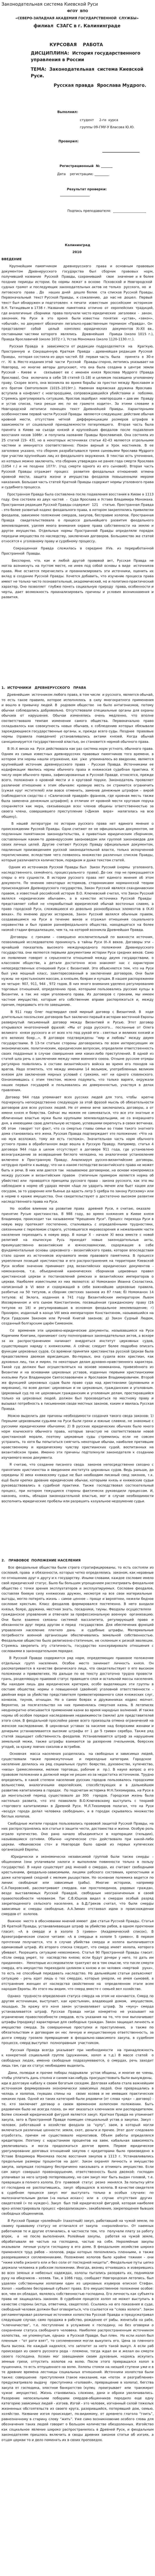 Законодательная система Киевской Руси